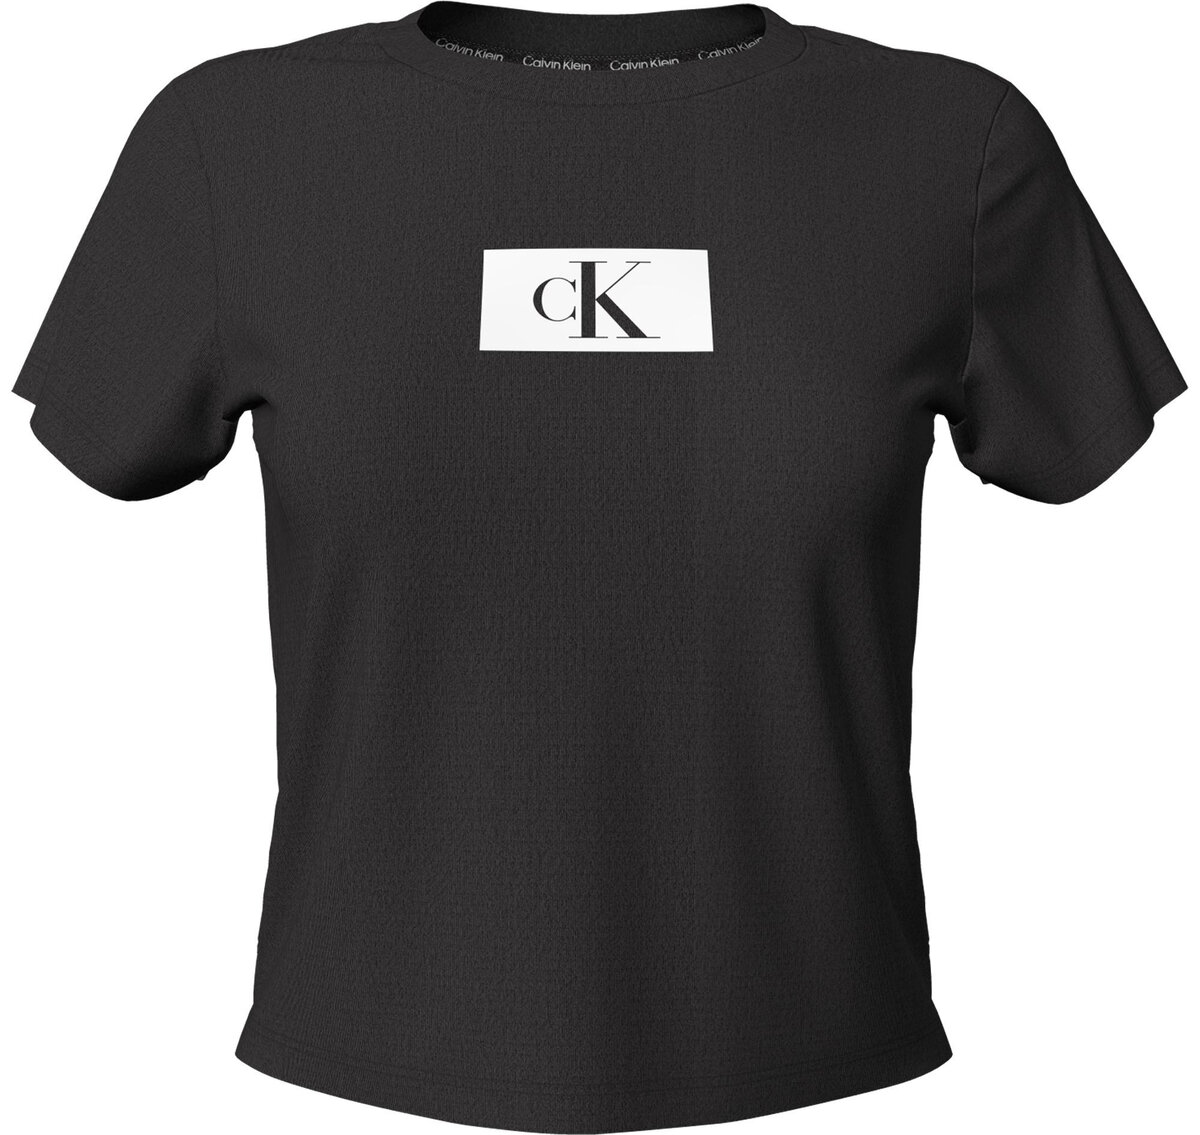 Klasické dámské tričko Calvin Klein 1996 černé, L i10_P67114_2:90_